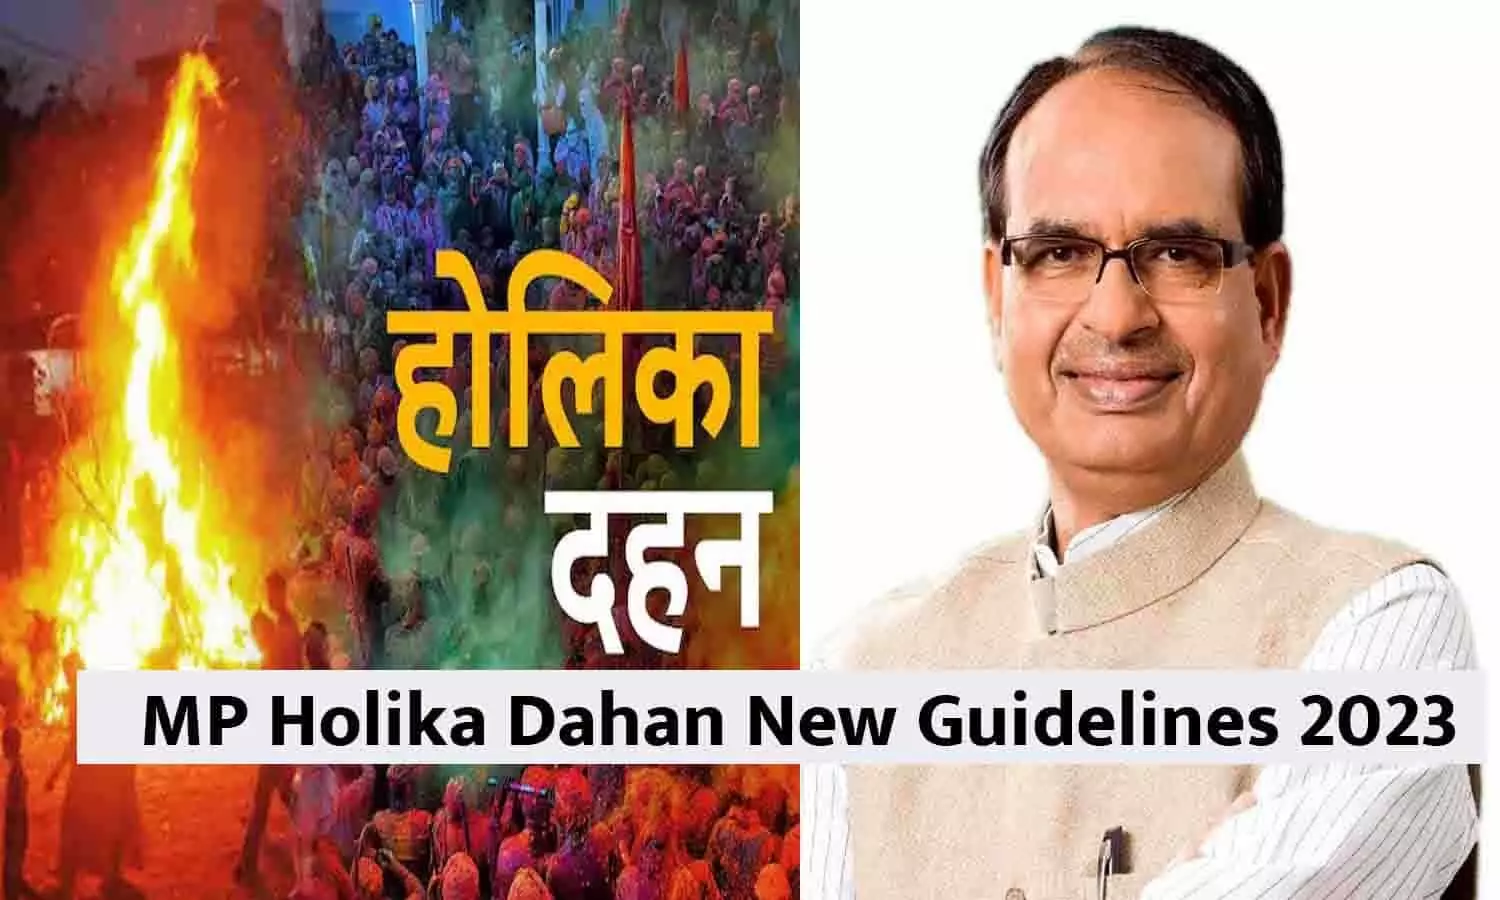 MP Holika Dahan New Guidelines 2023: एमपी में होलिका दहन को लेकर नई गाइडलाइन जारी, फटाफट देखे New Update